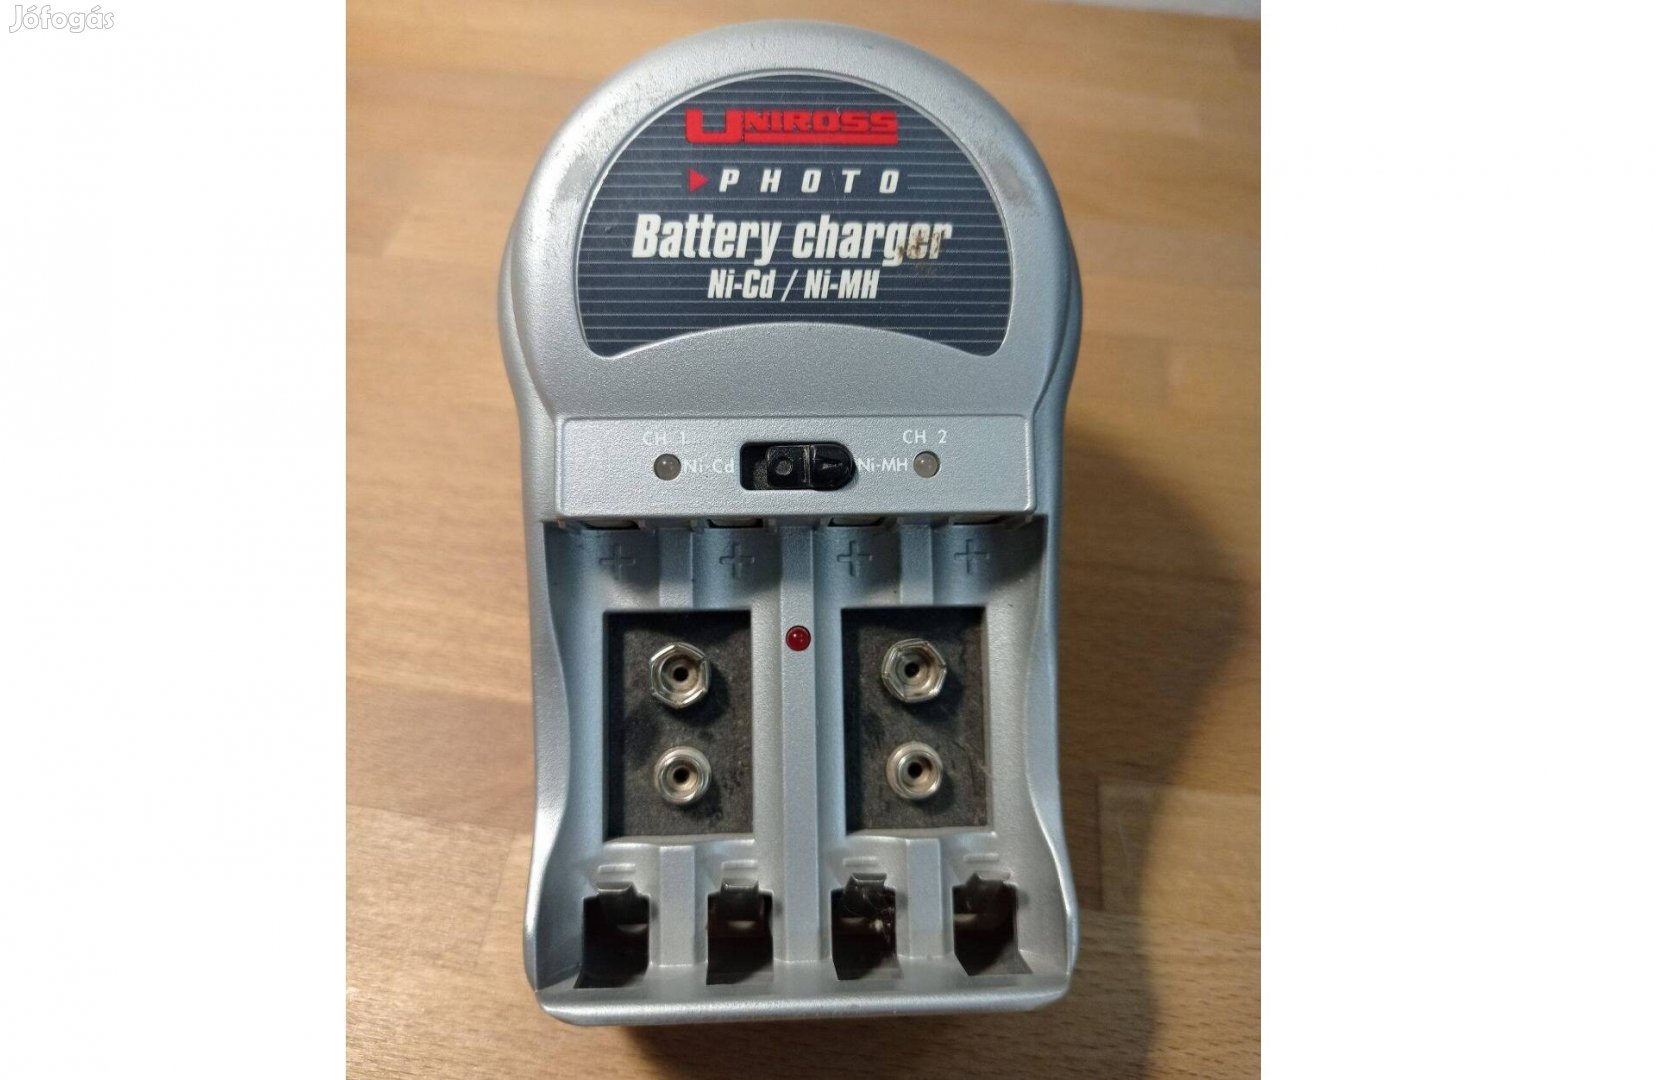 Uniross RC101677 photo battery charger Ni-cd, Ni-MH elemtöltő II